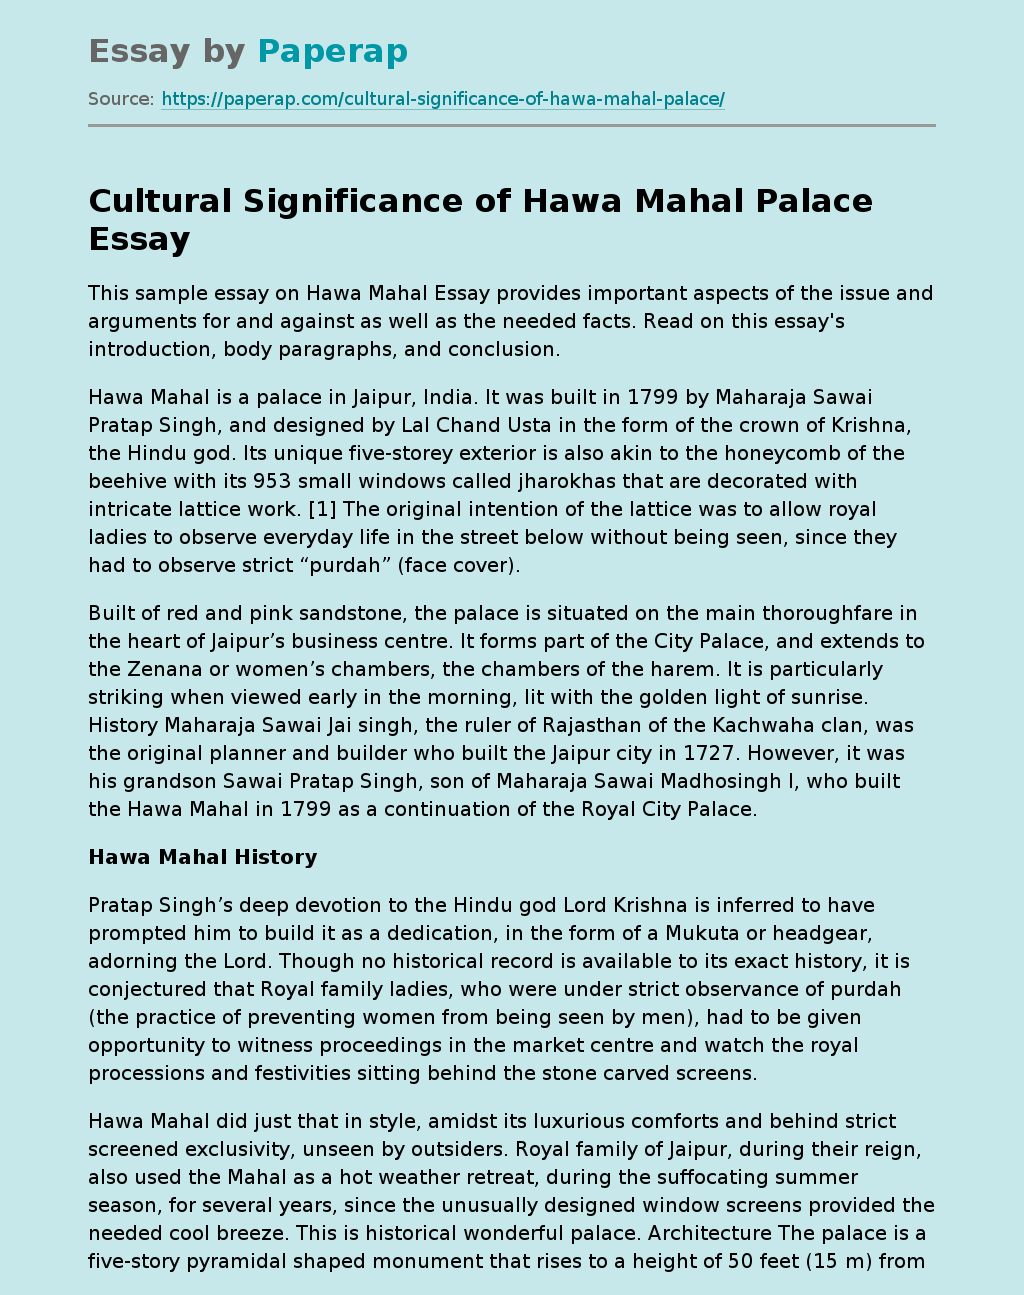 Cultural Significance of Hawa Mahal Palace